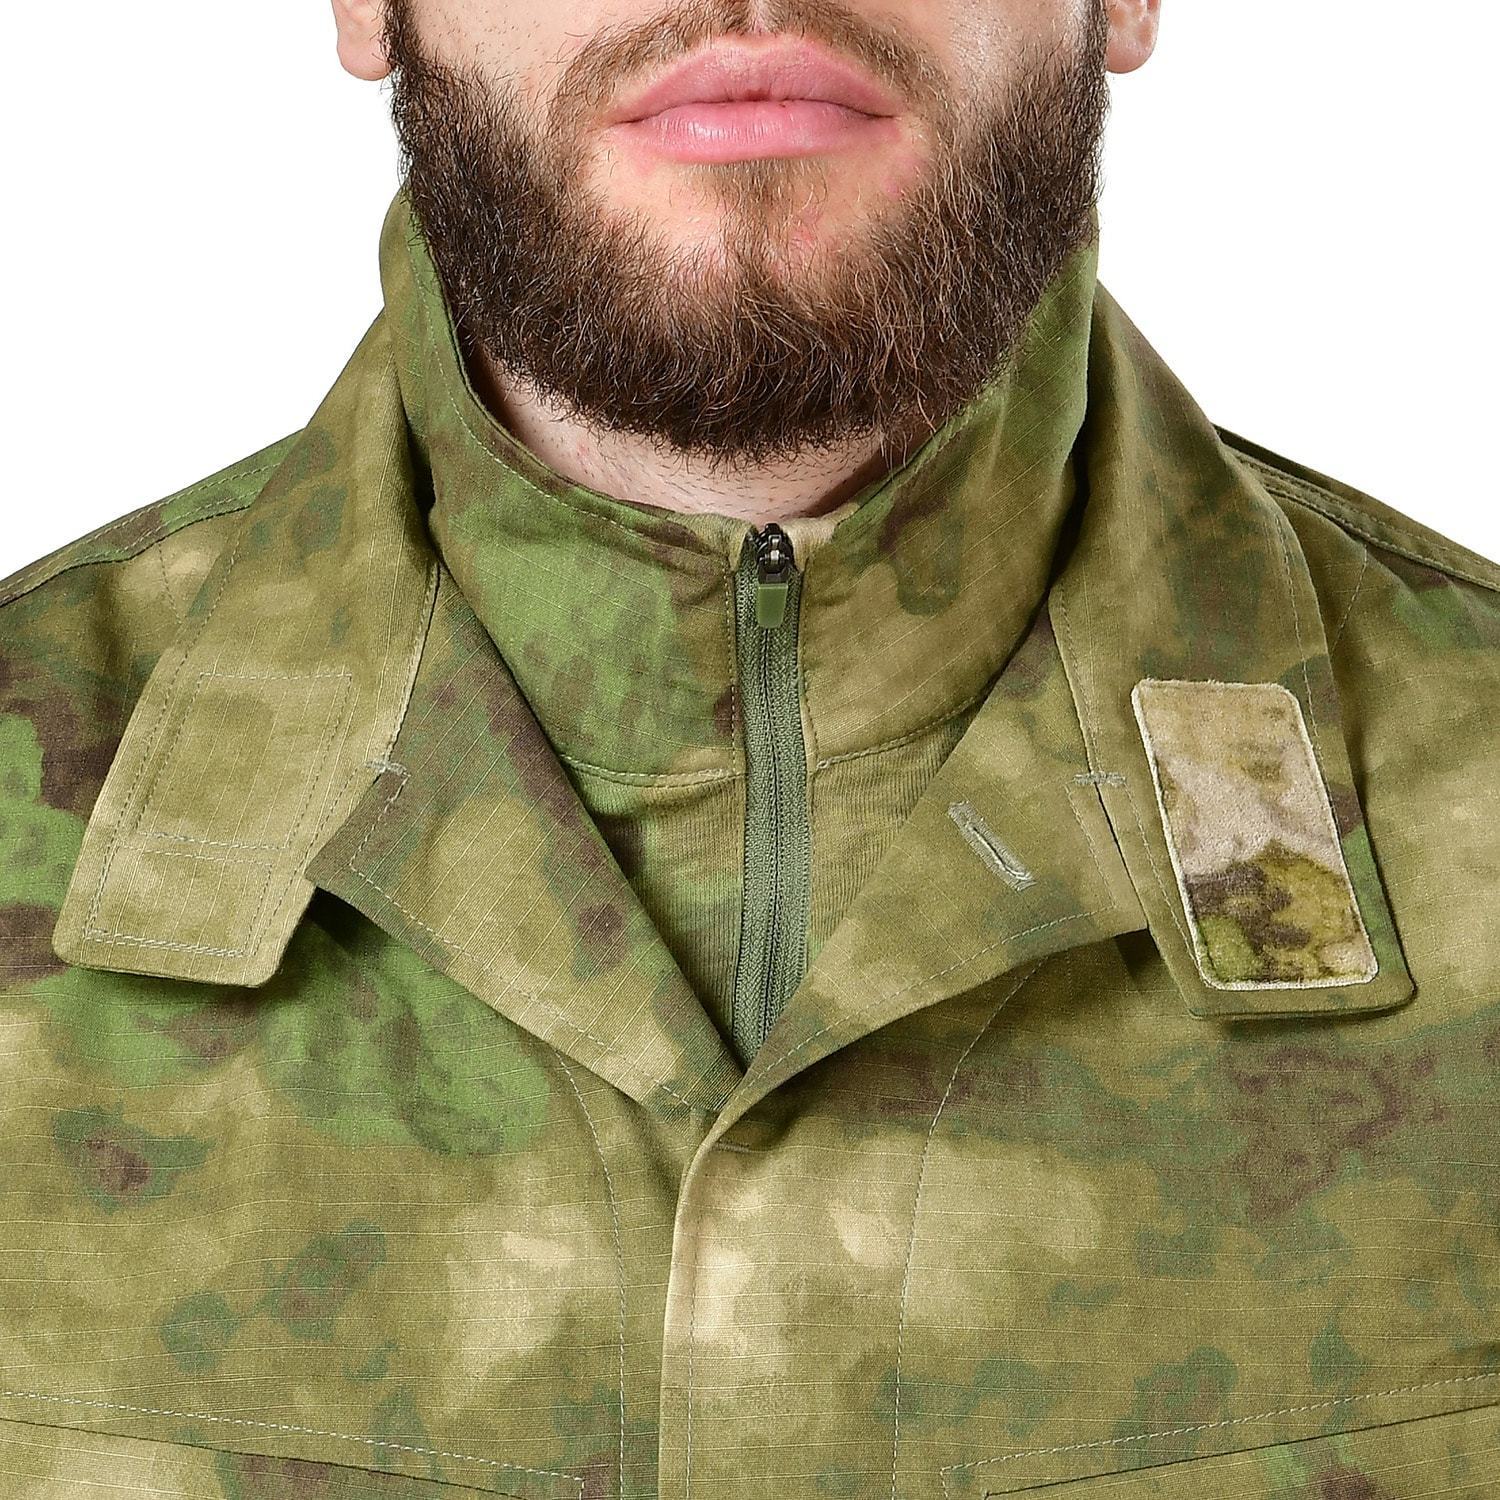 Боевая куртка мужская 5.45 Design Рысь